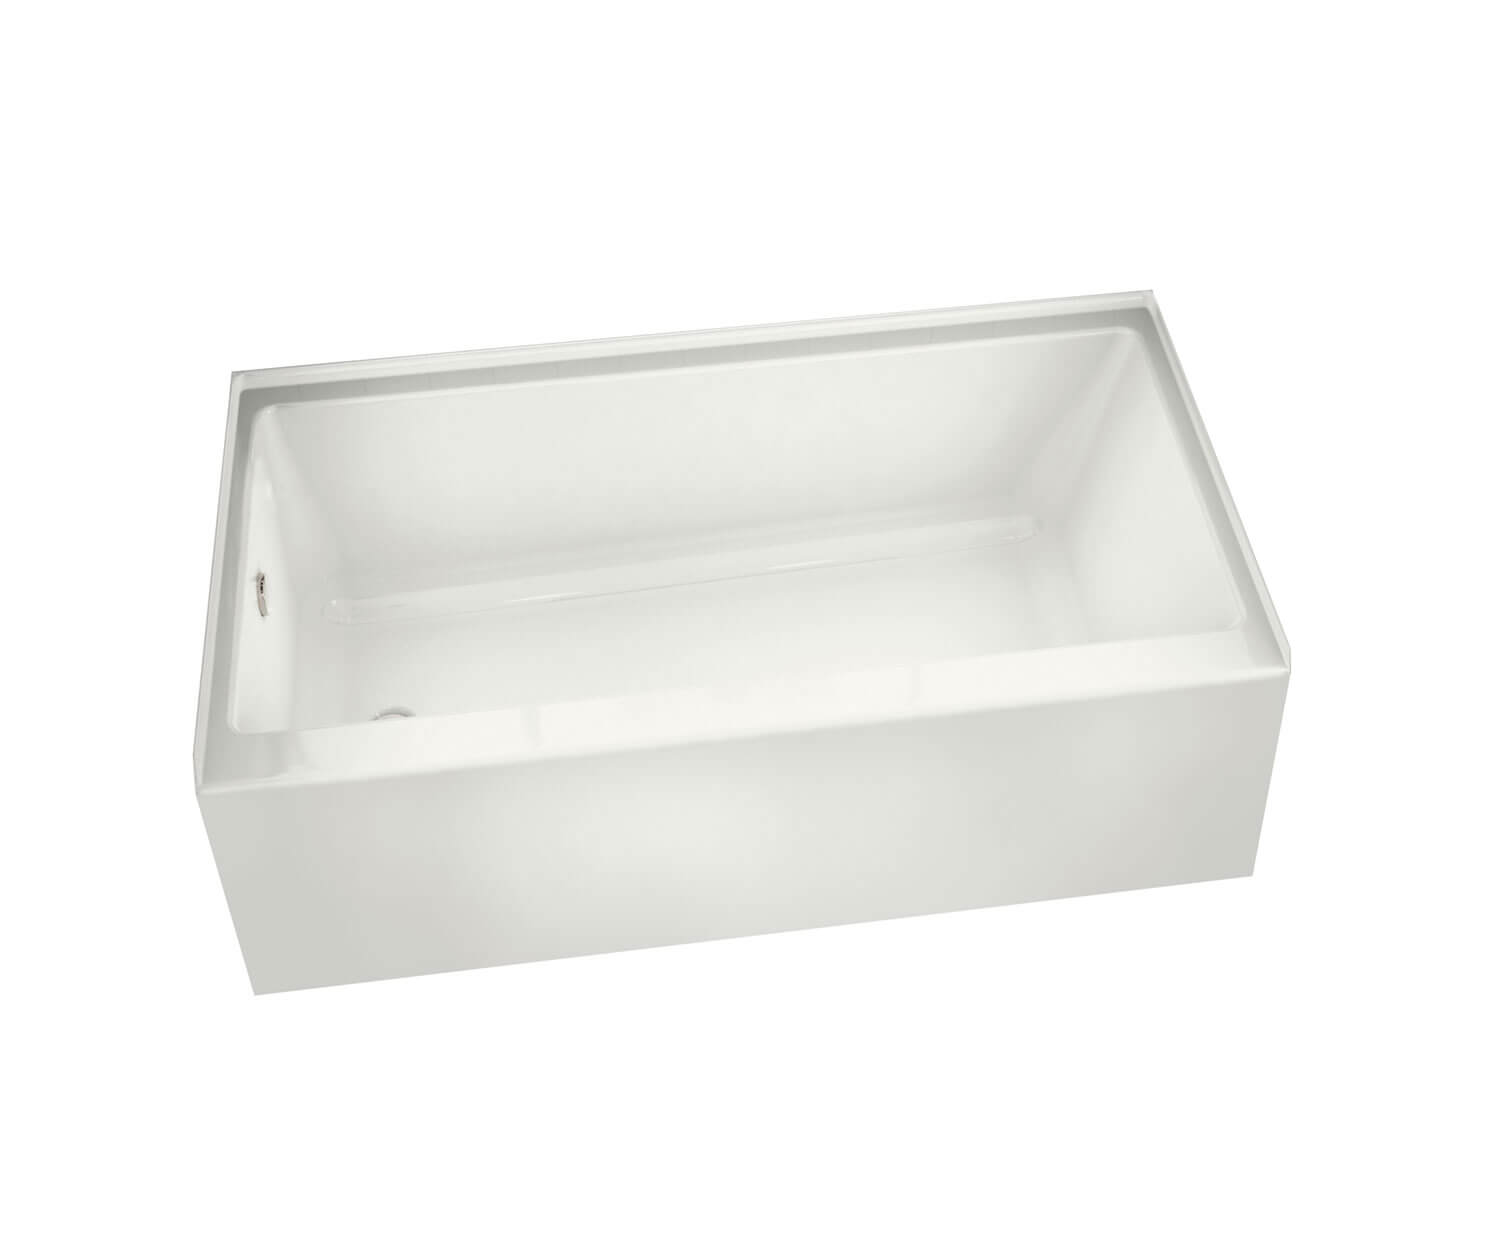 Rubix 60x32x18" Alcove Soaker Bathtub in White w/Left Drain